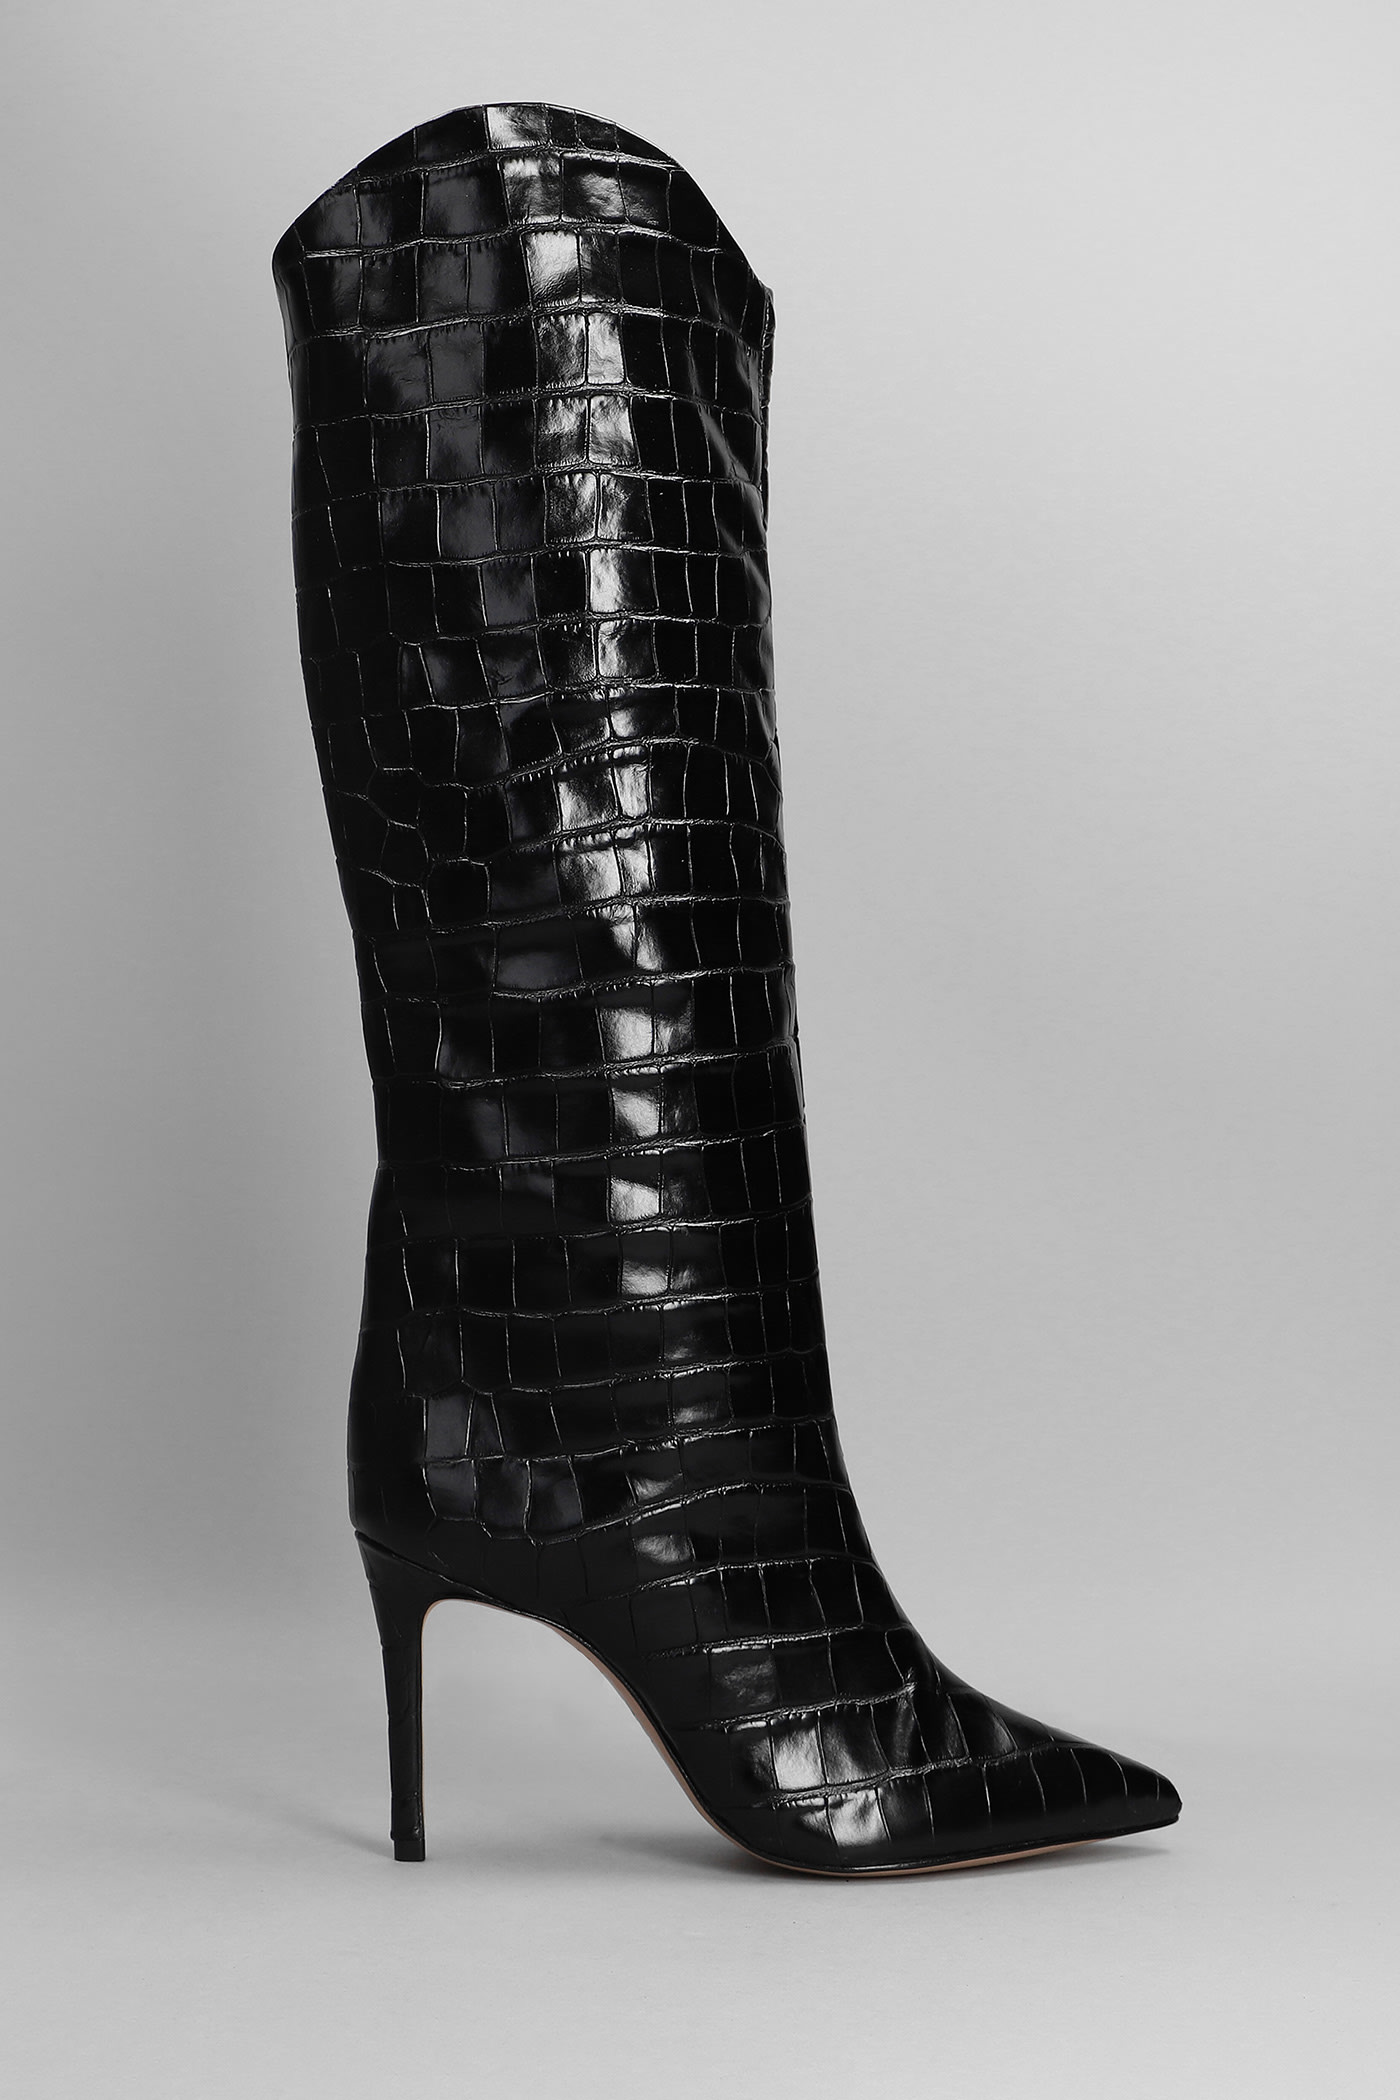 Schutz Maryana High Heels Boots In Black Leather